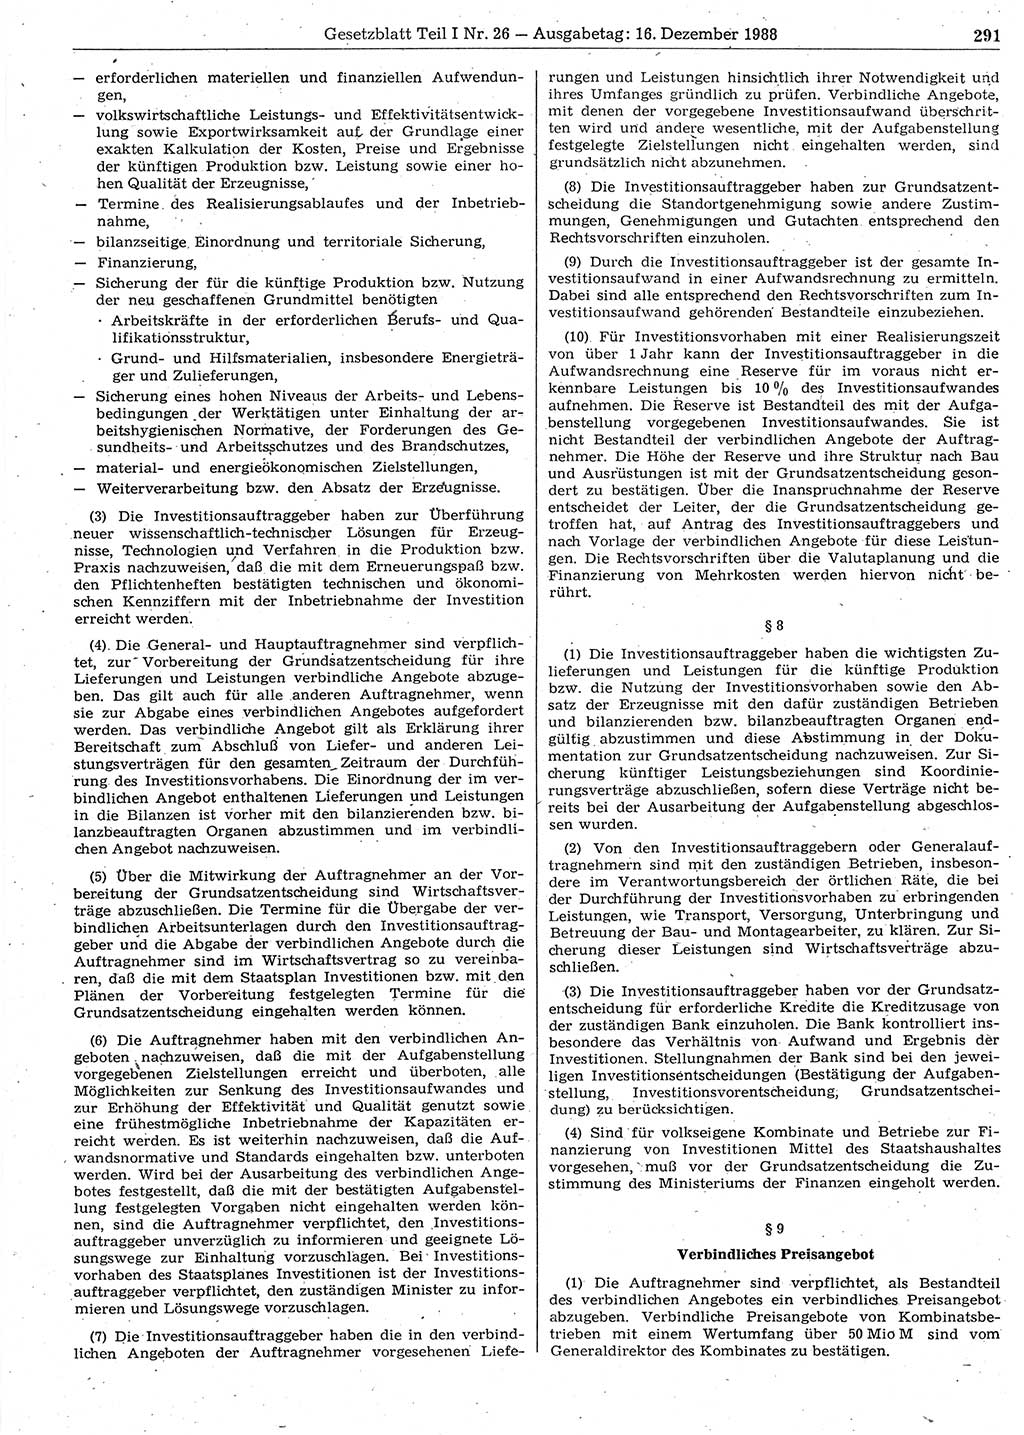 Gesetzblatt (GBl.) der Deutschen Demokratischen Republik (DDR) Teil Ⅰ 1988, Seite 291 (GBl. DDR Ⅰ 1988, S. 291)